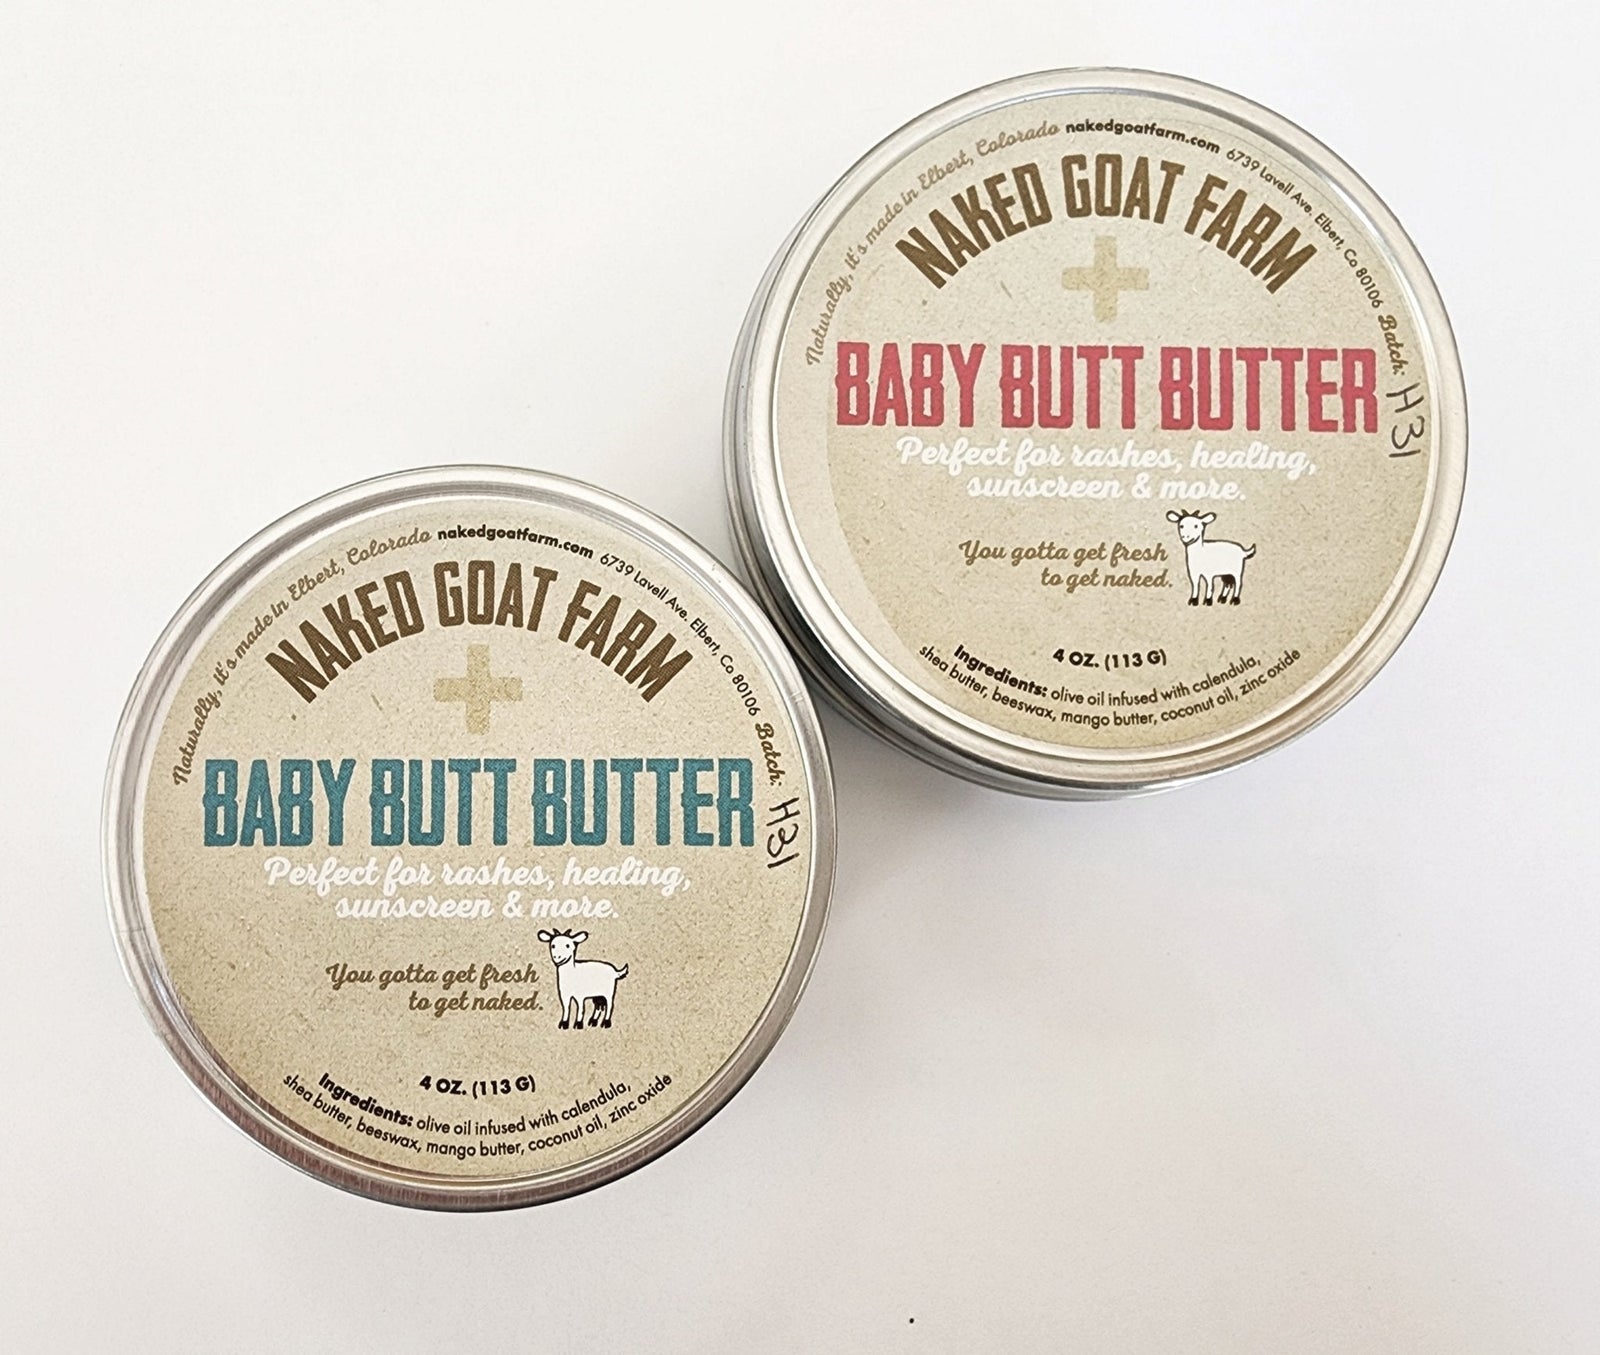 Baby Butt Butter - nakedgoatfarm